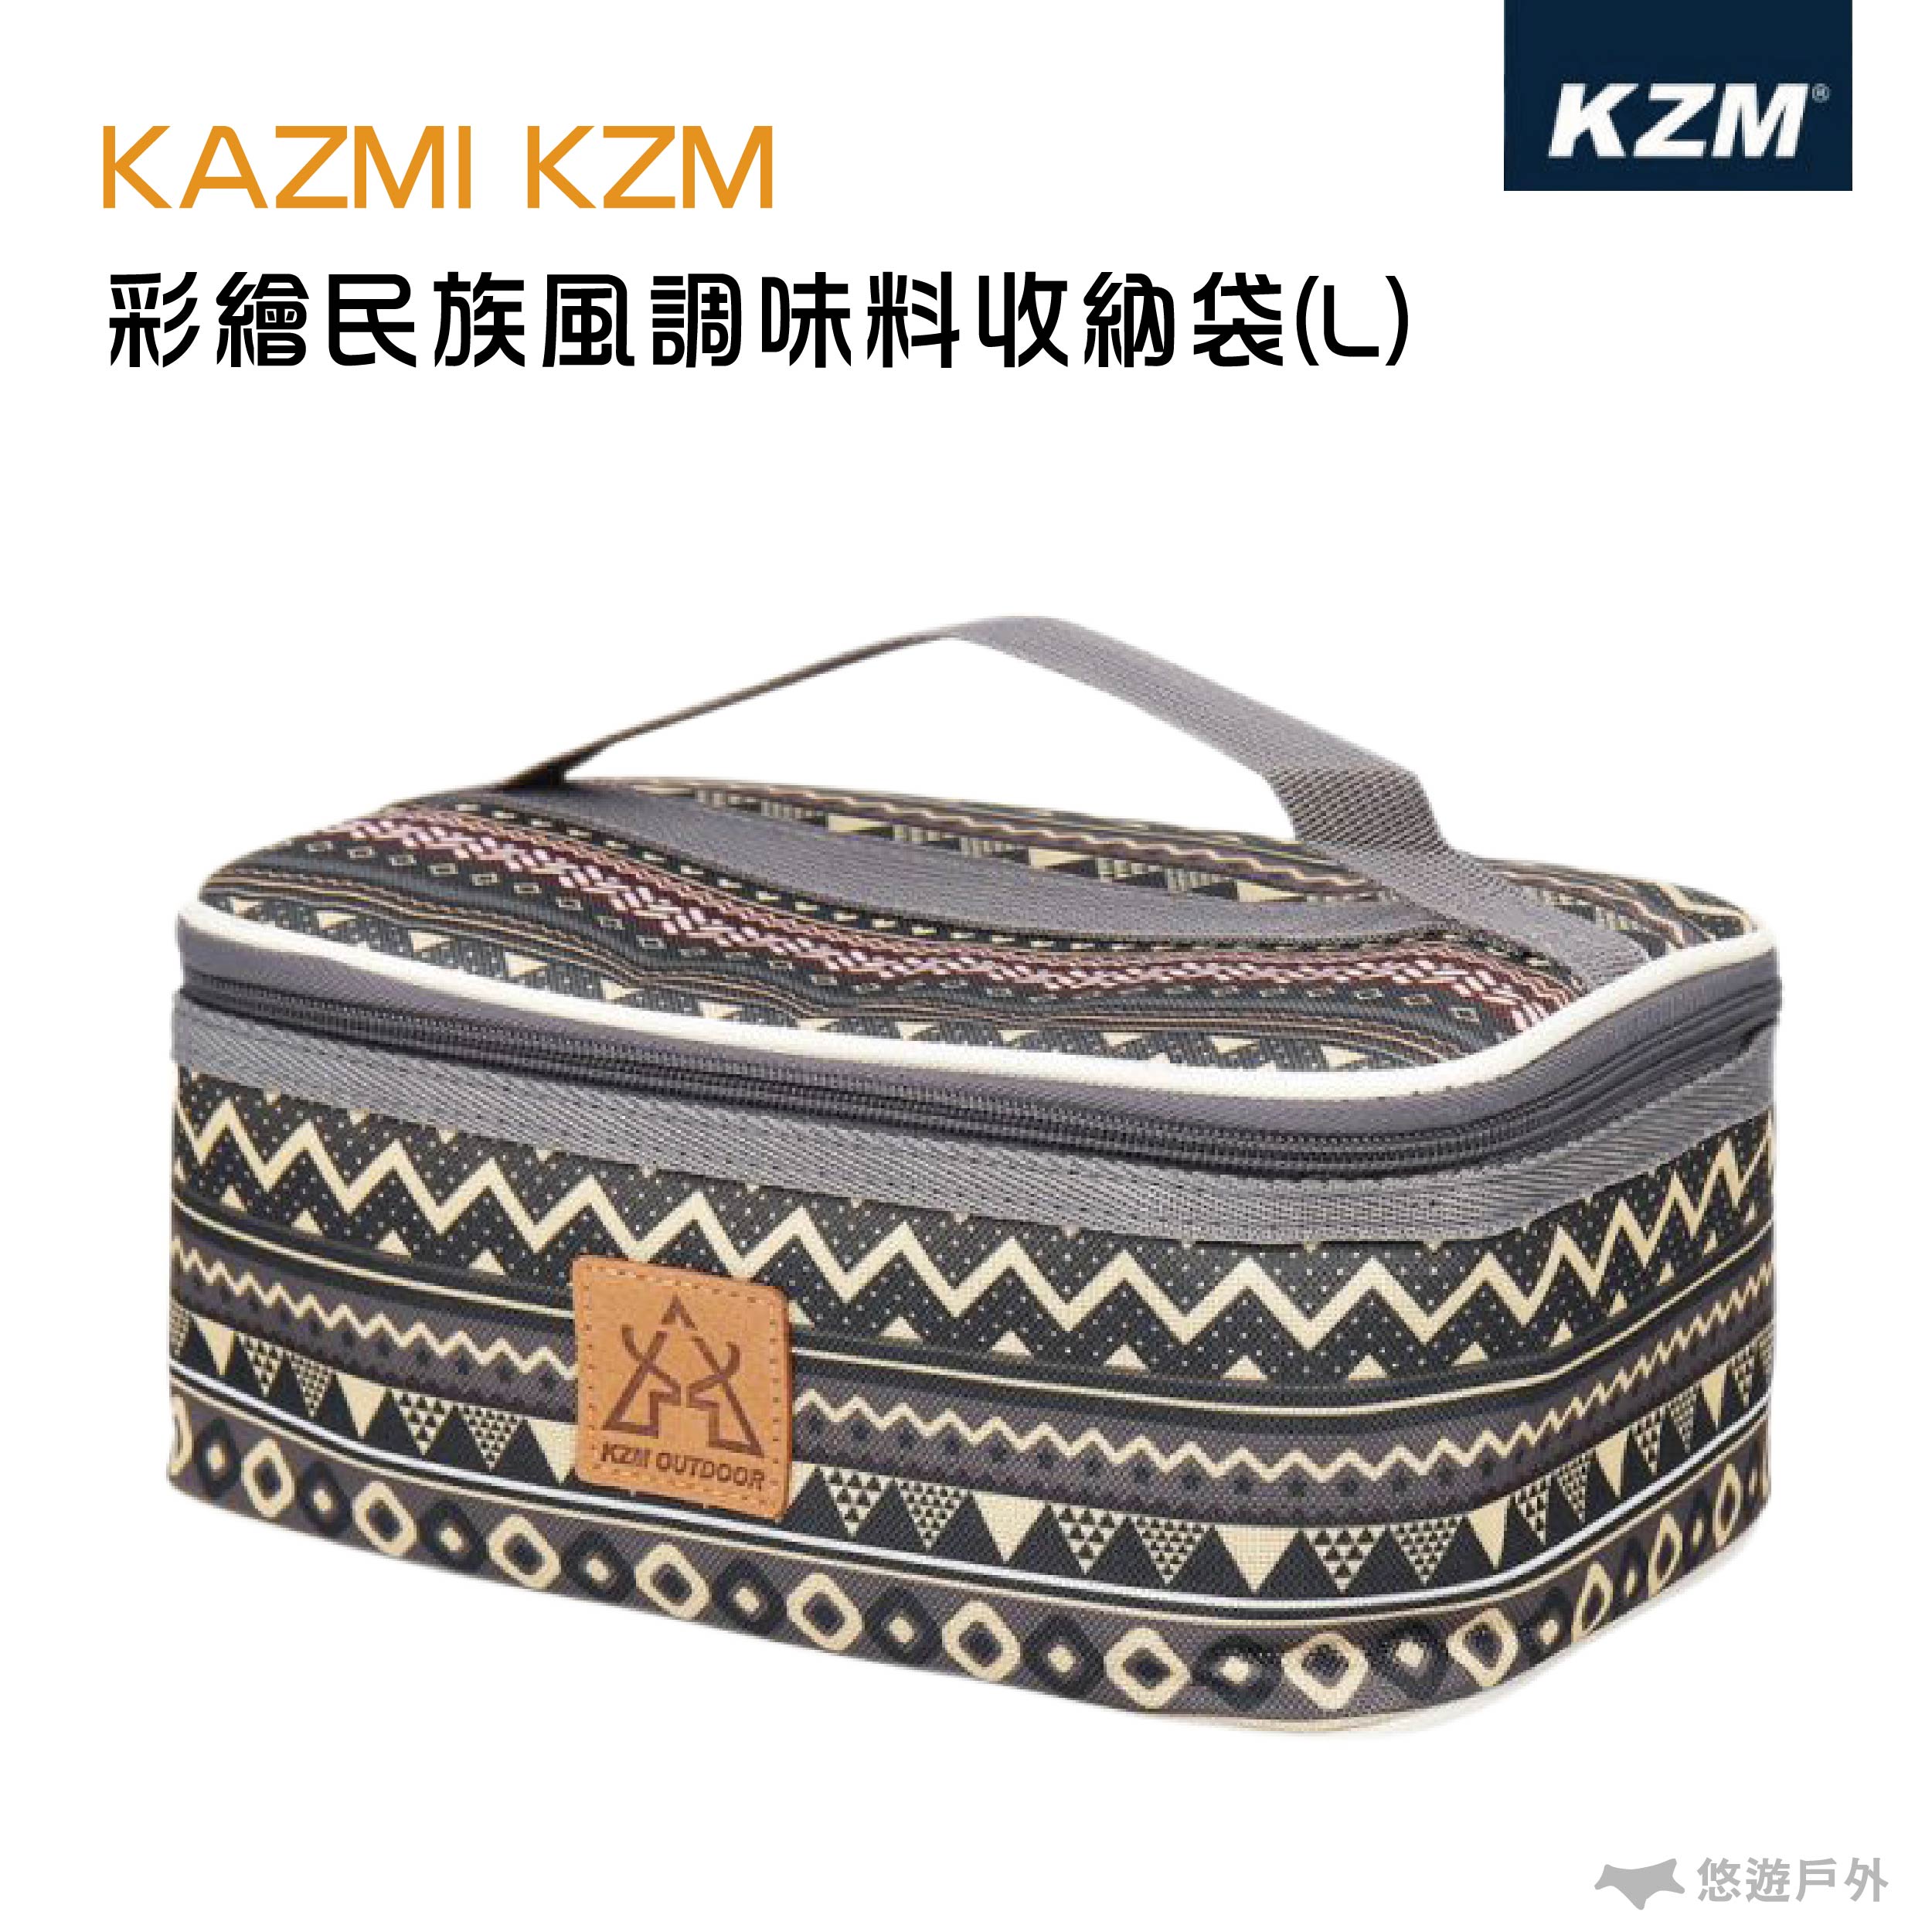 【KAZMI】彩繪民族風調味料收納袋( L )藍灰 野餐 露營 戶外 收納包 調味料 悠遊戶外